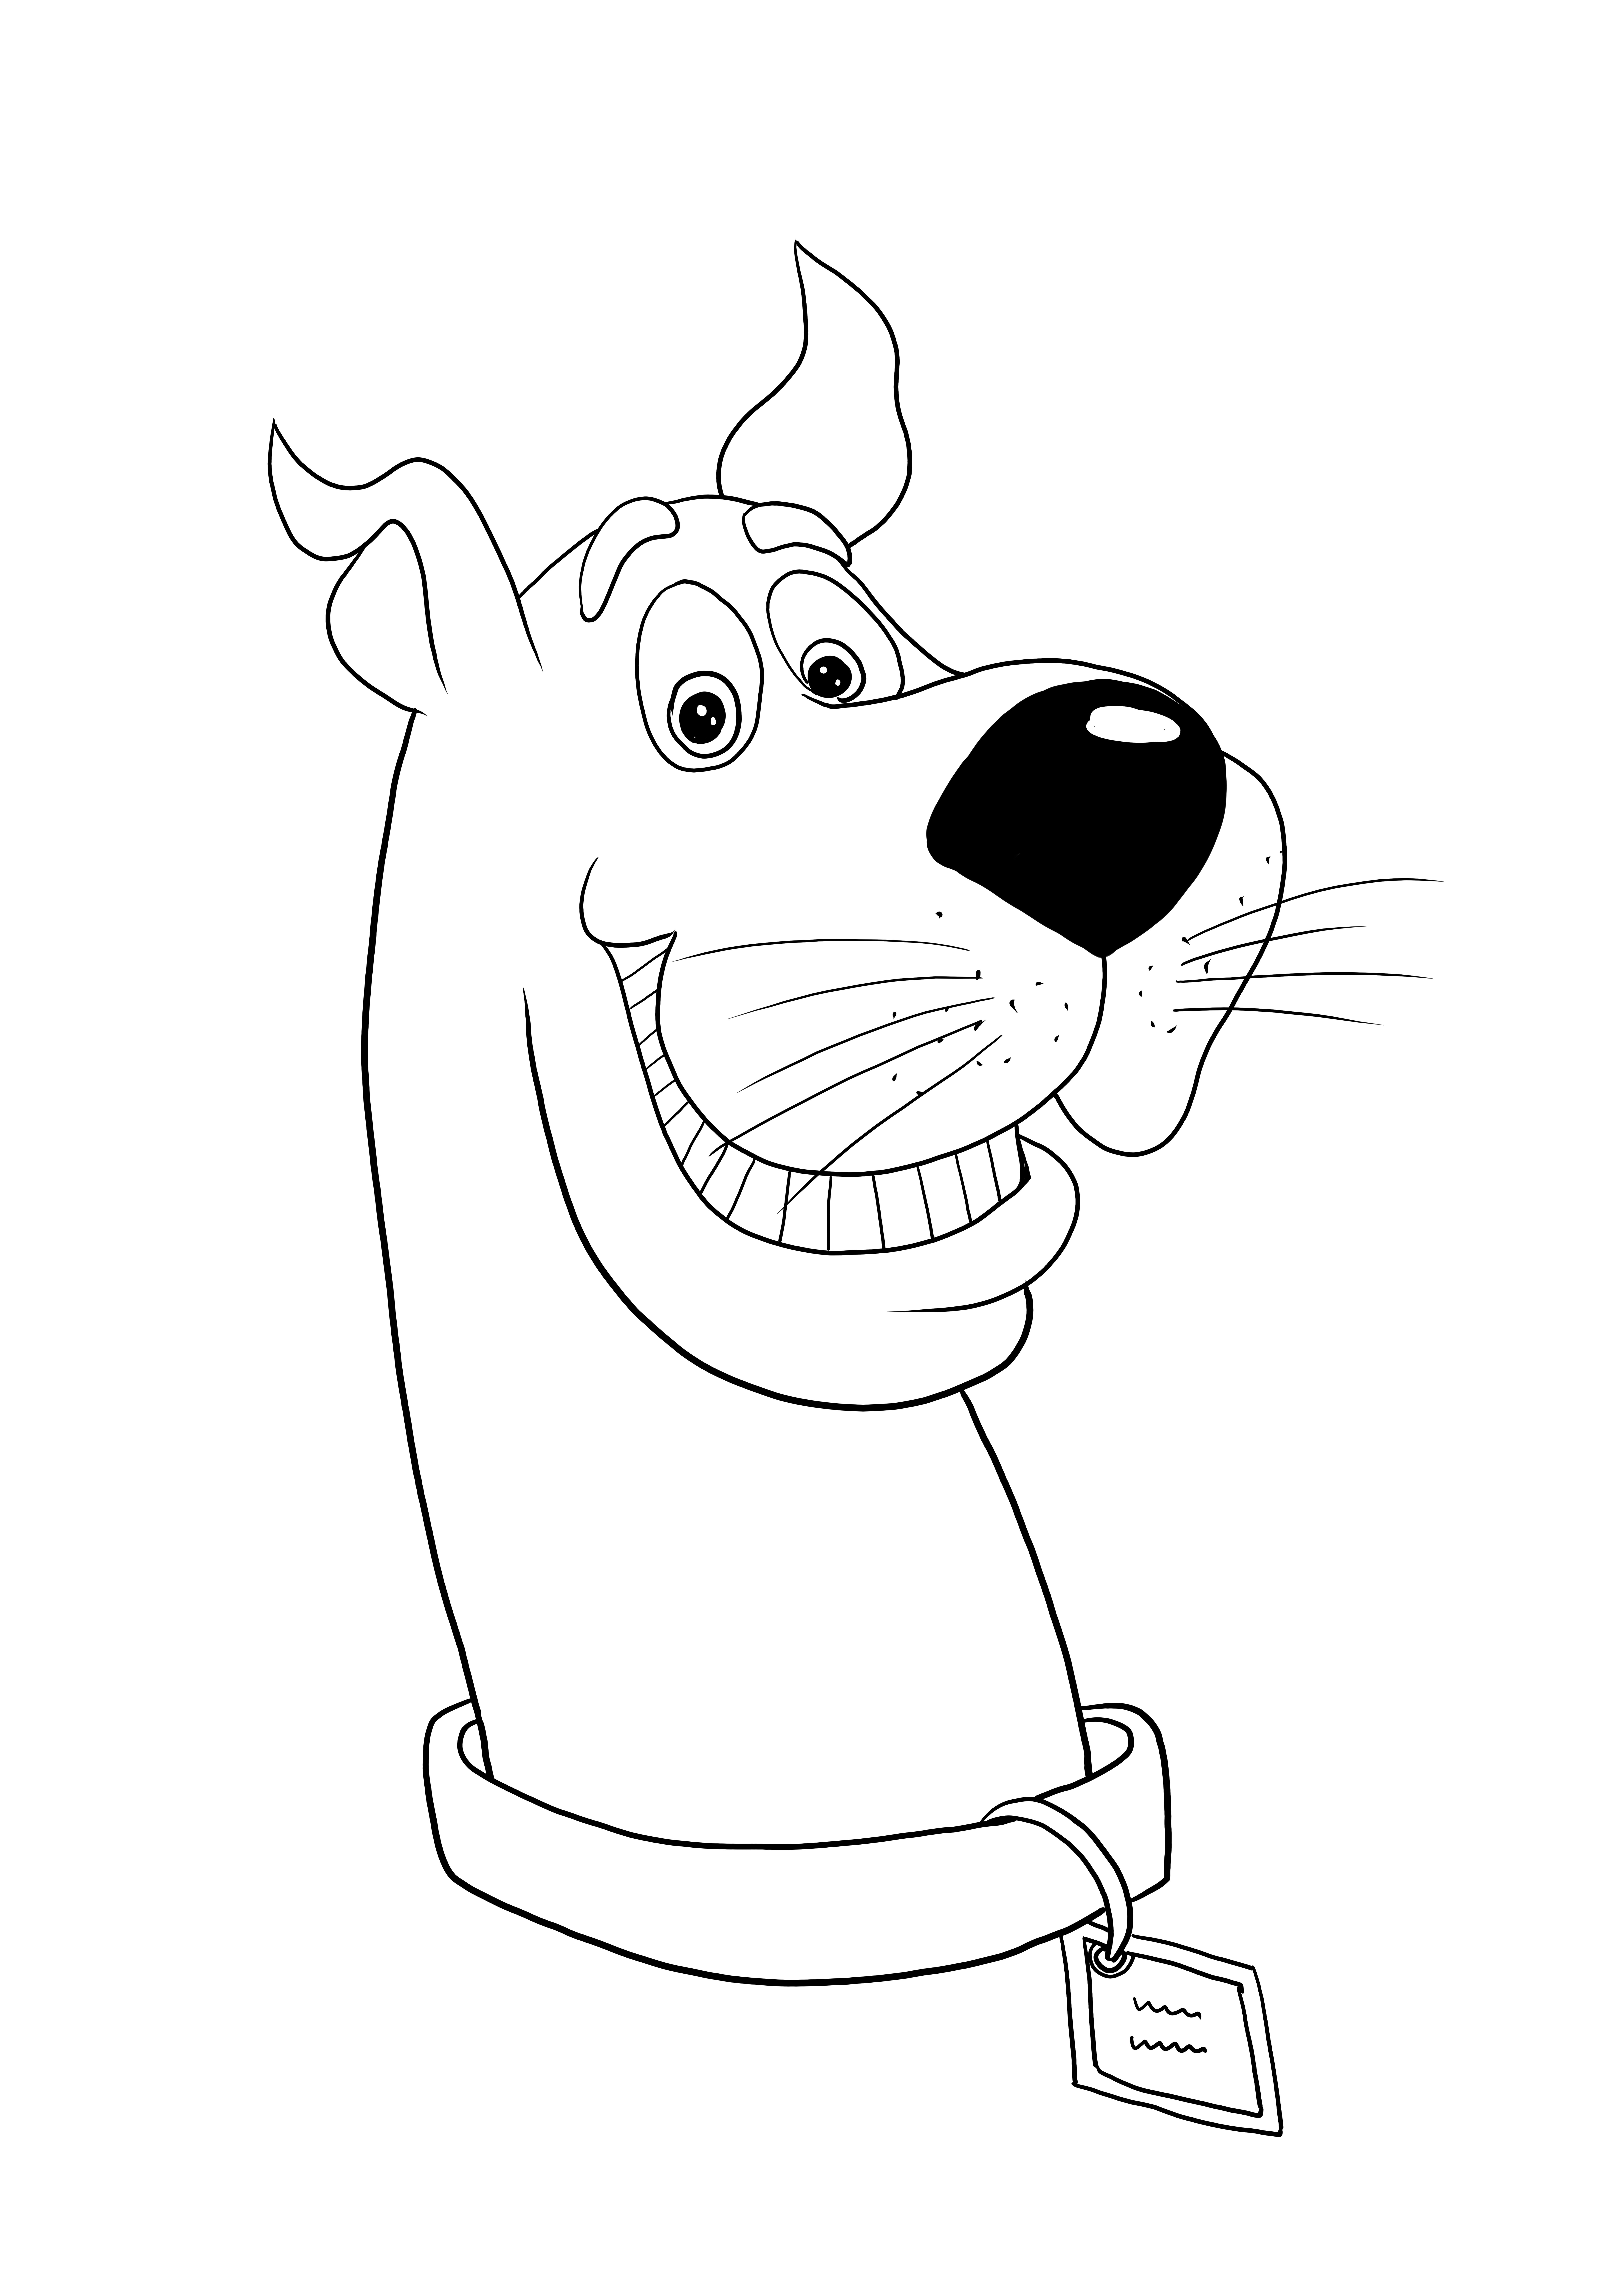 Visage heureux Scooby Doo cartoon image gratuite à imprimer à colorier